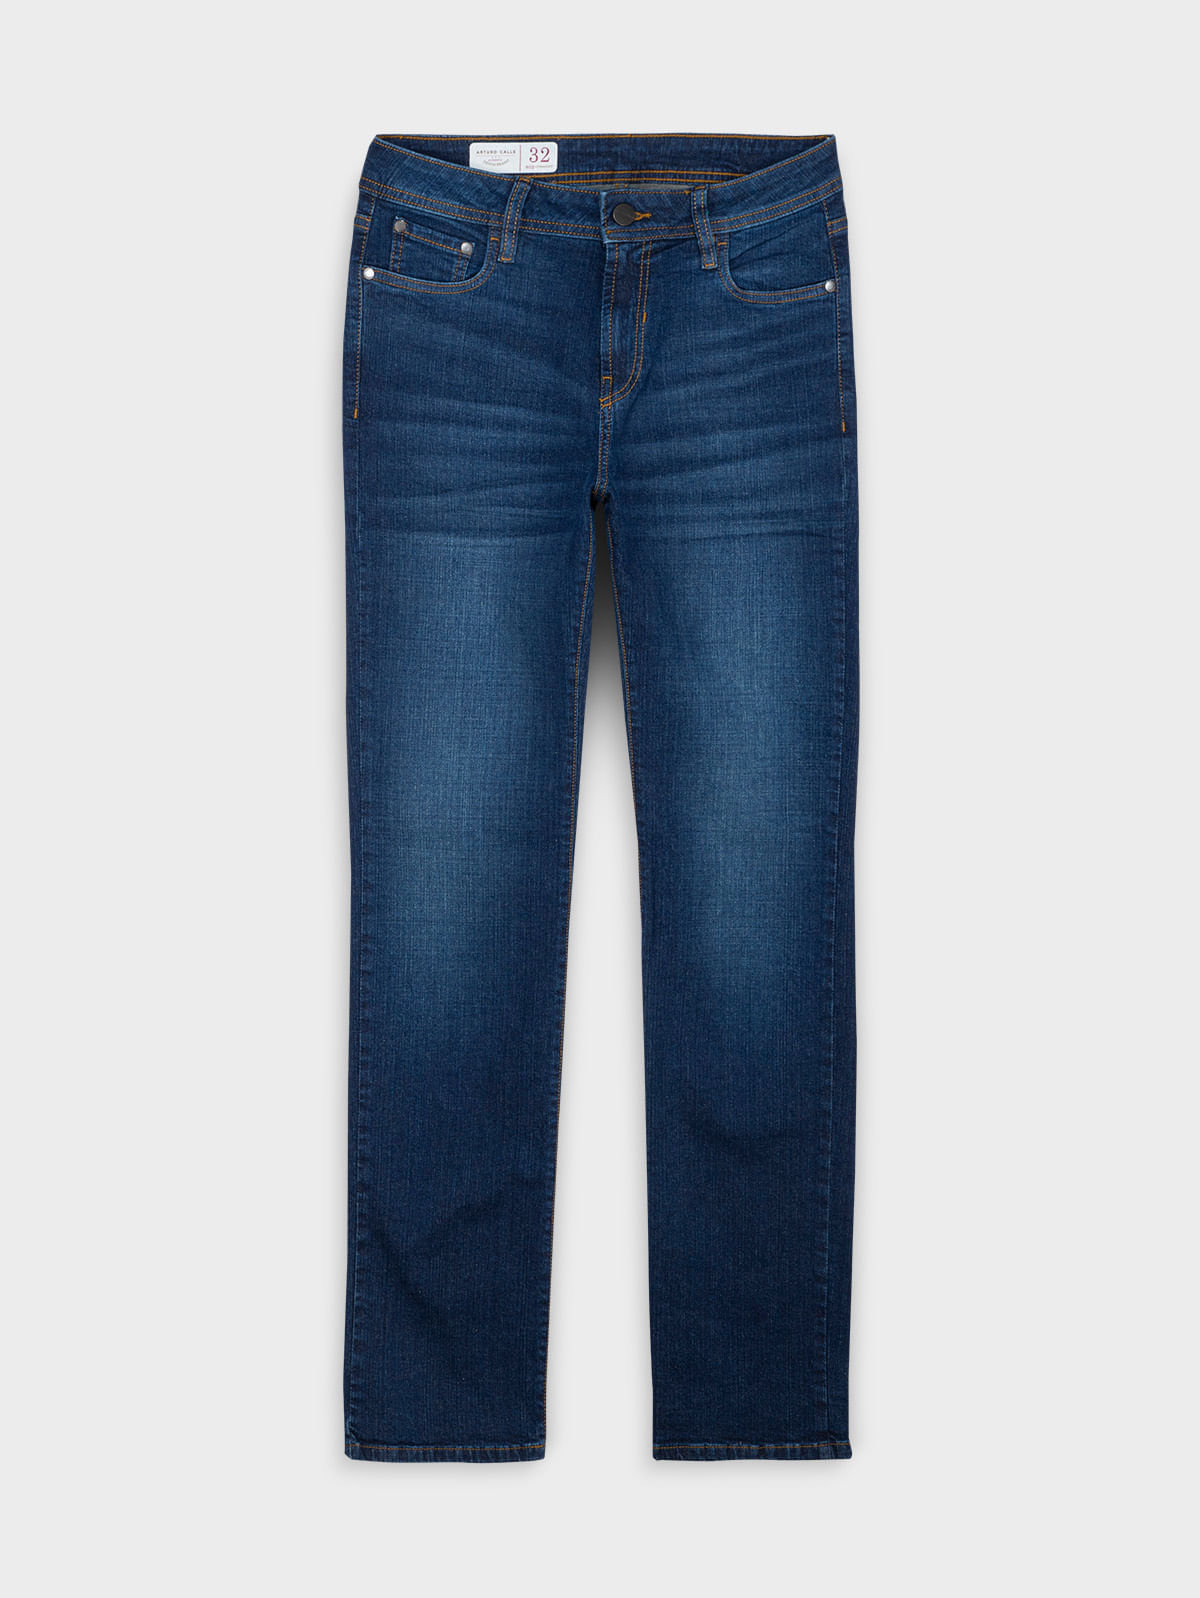 Pantalón de jeans clásico cintura alta ULALA1025 - ArturoPrendasPy